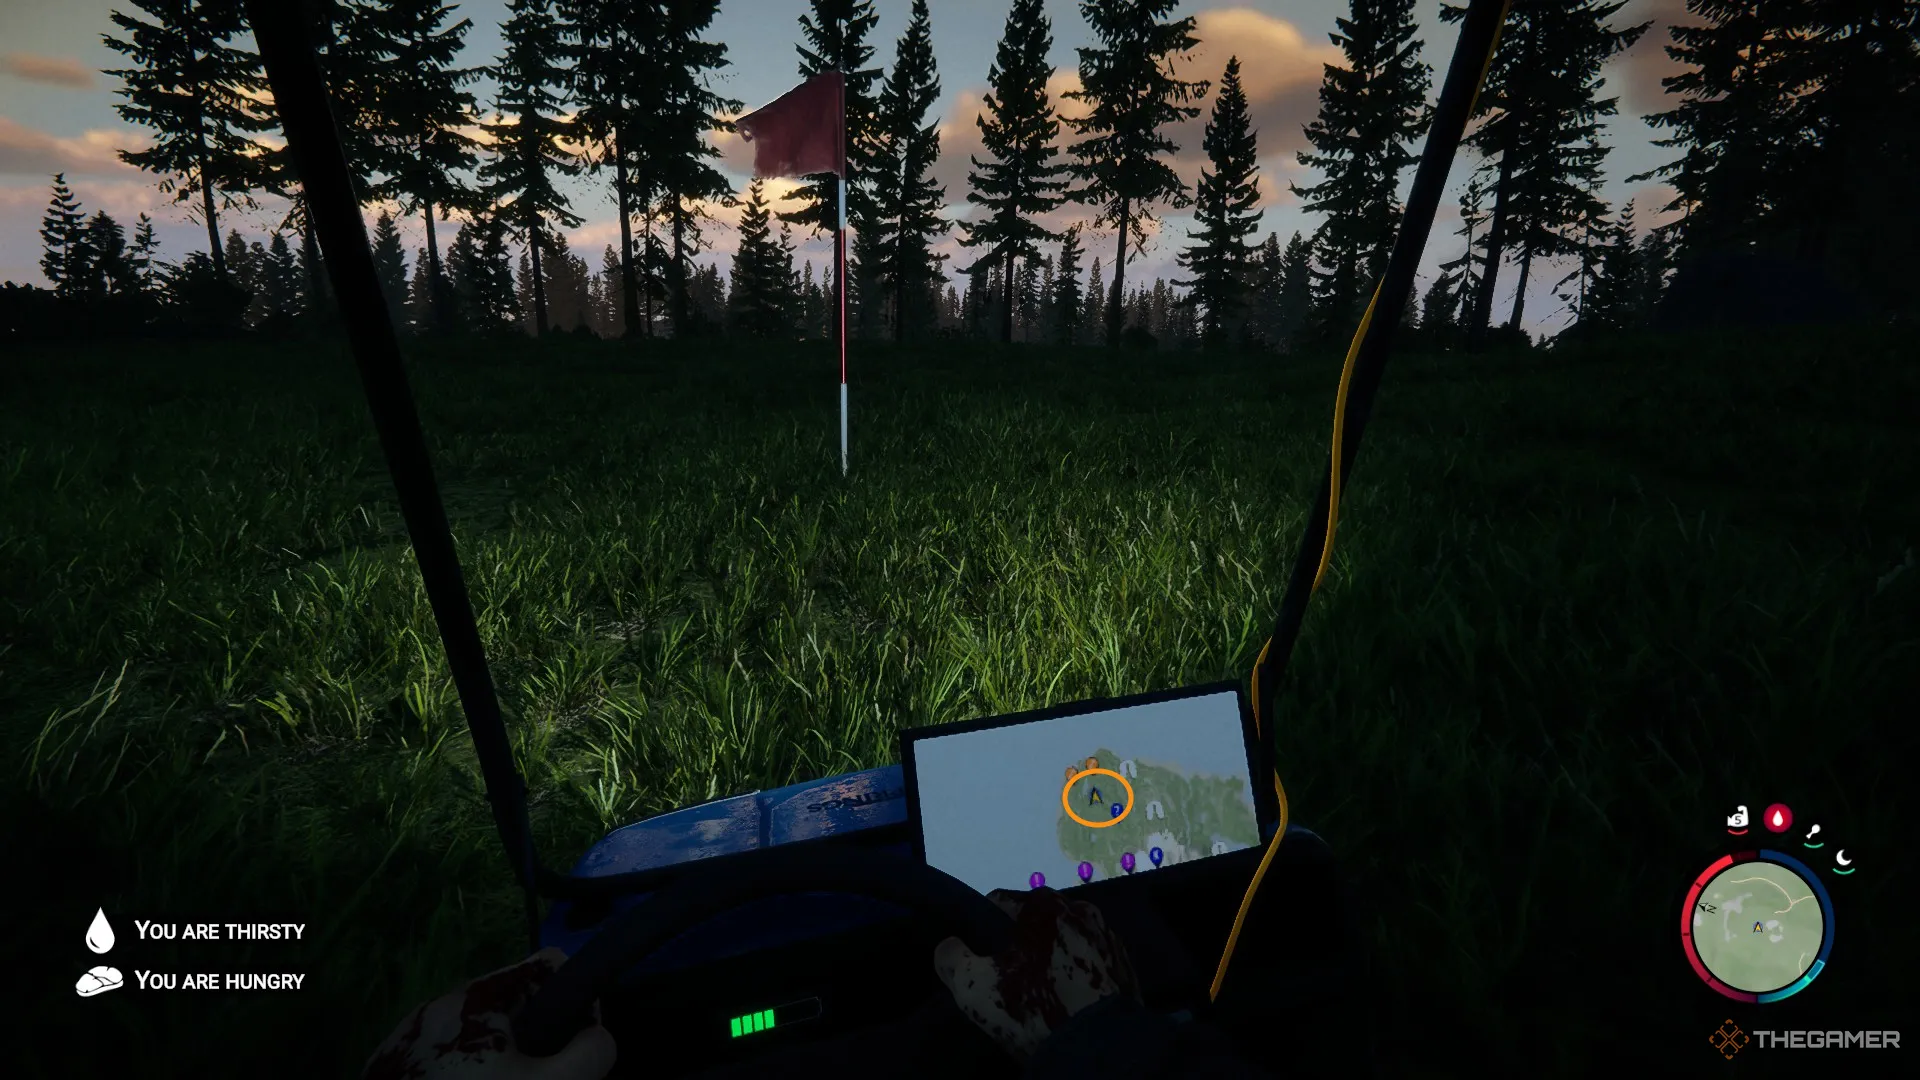 Скриншот из Sons of the Forest, показывающий игрового персонажа, сидящего в гольф-карте с включенными фарами, направленными на красный и белый гольф-флаг.